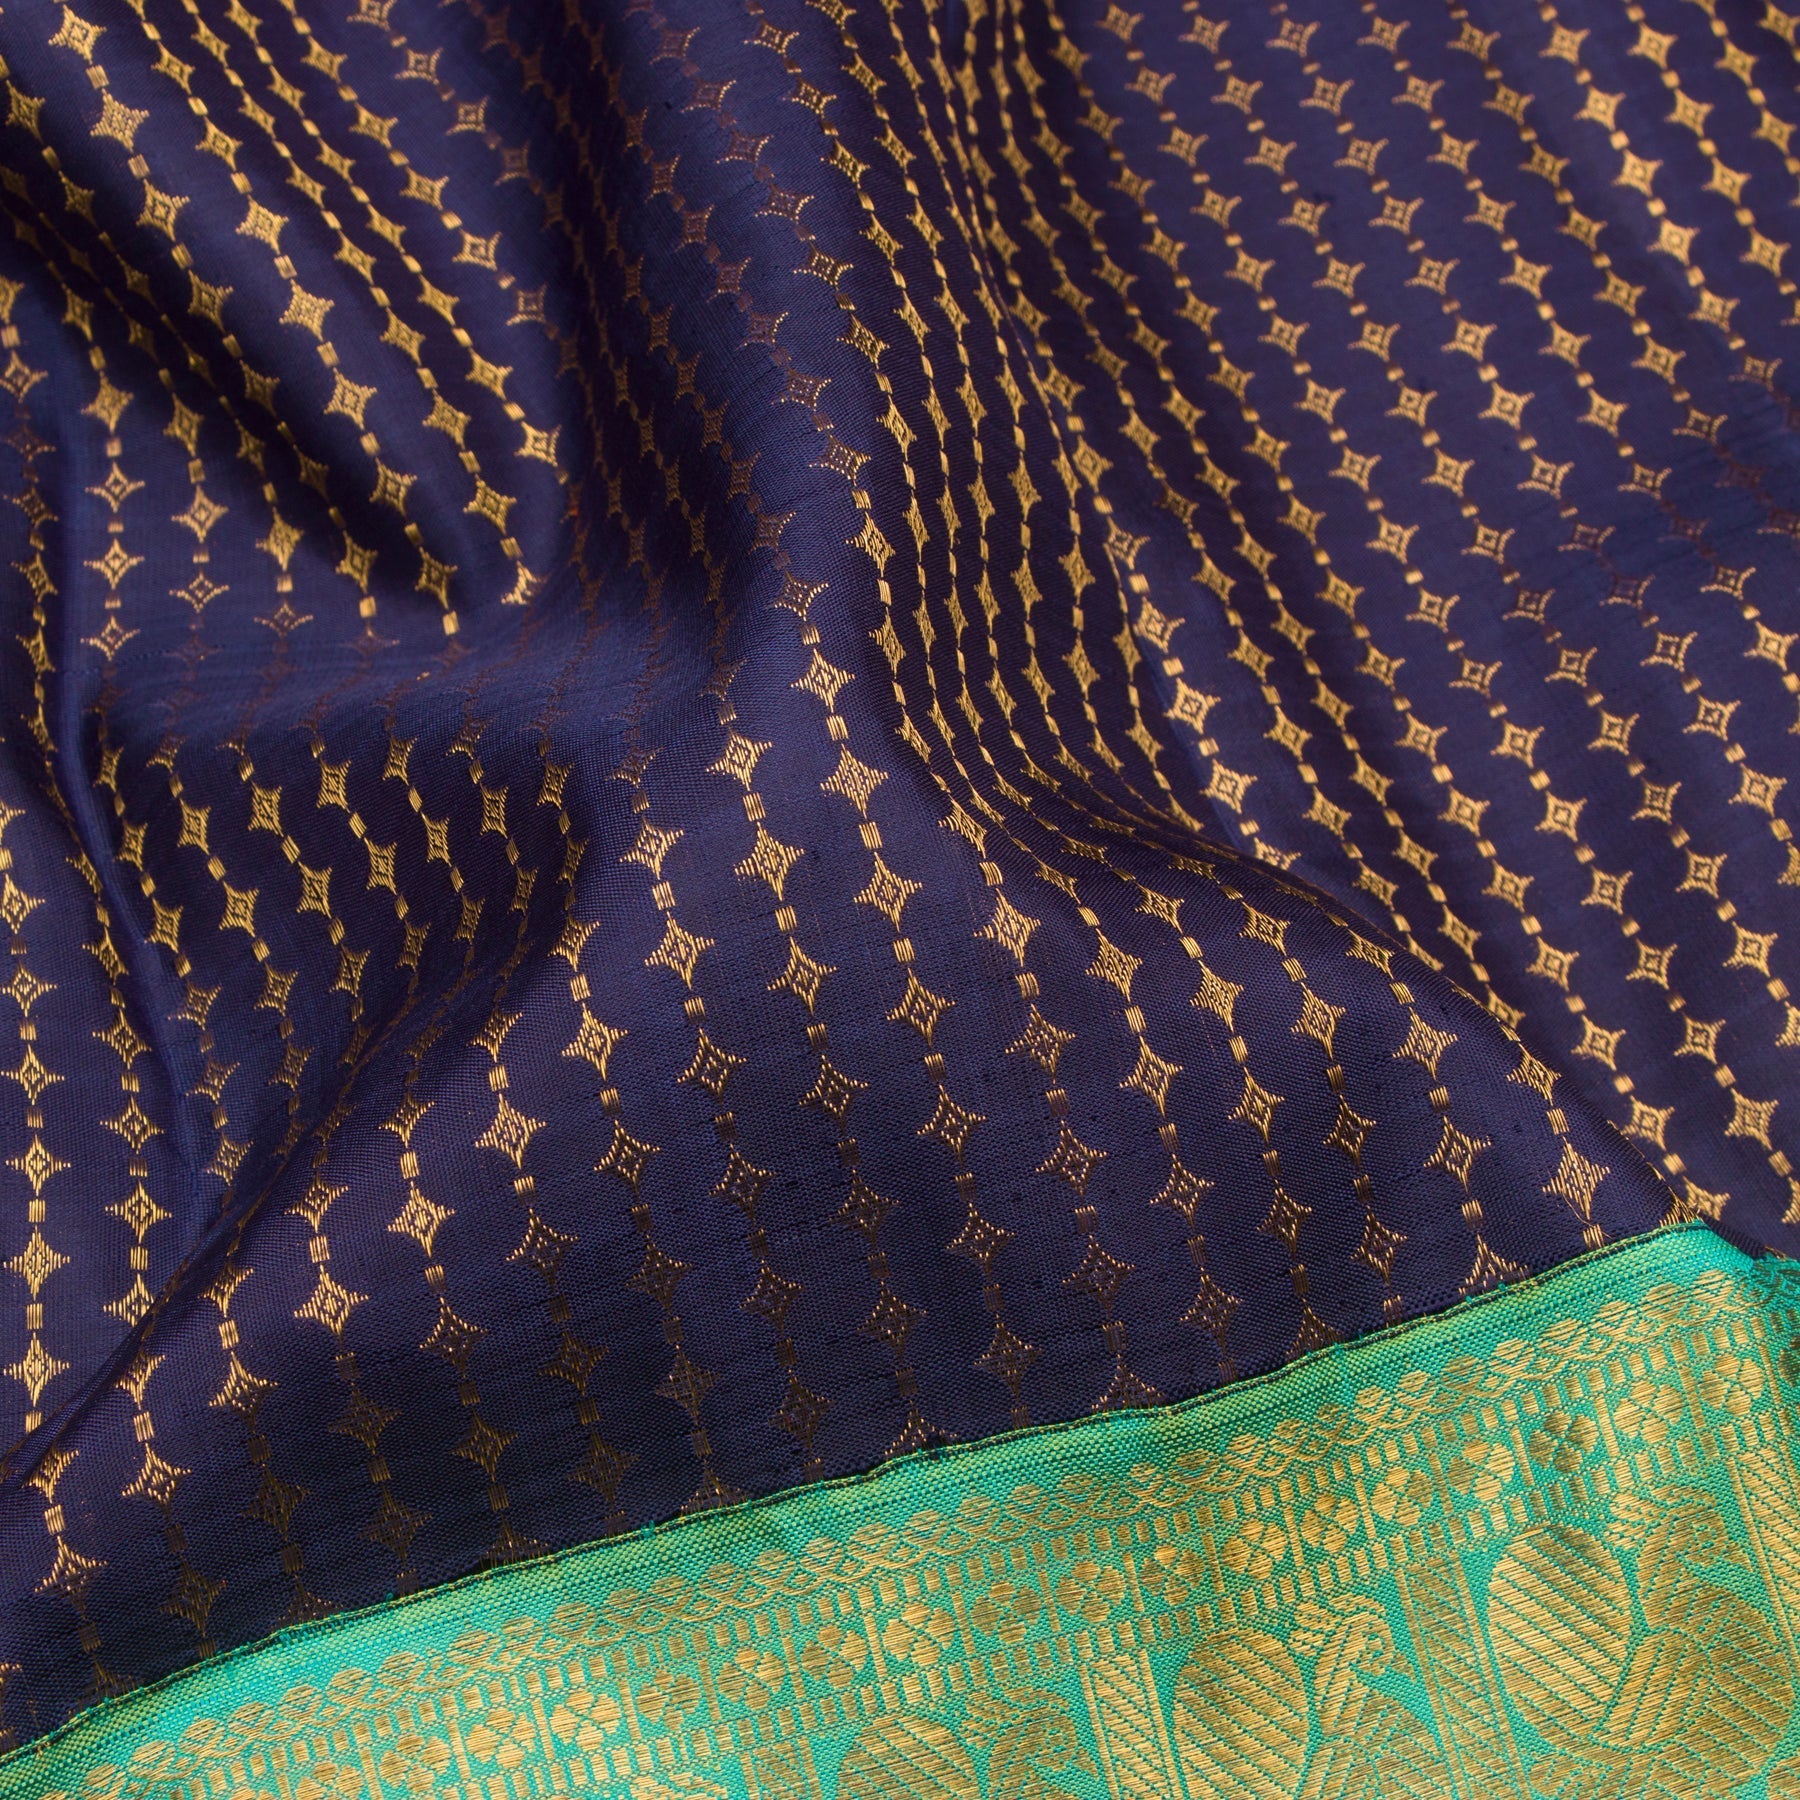 Kanakavalli Kanjivaram Silk Sari 22-110-HS001-00949 - Fabric View